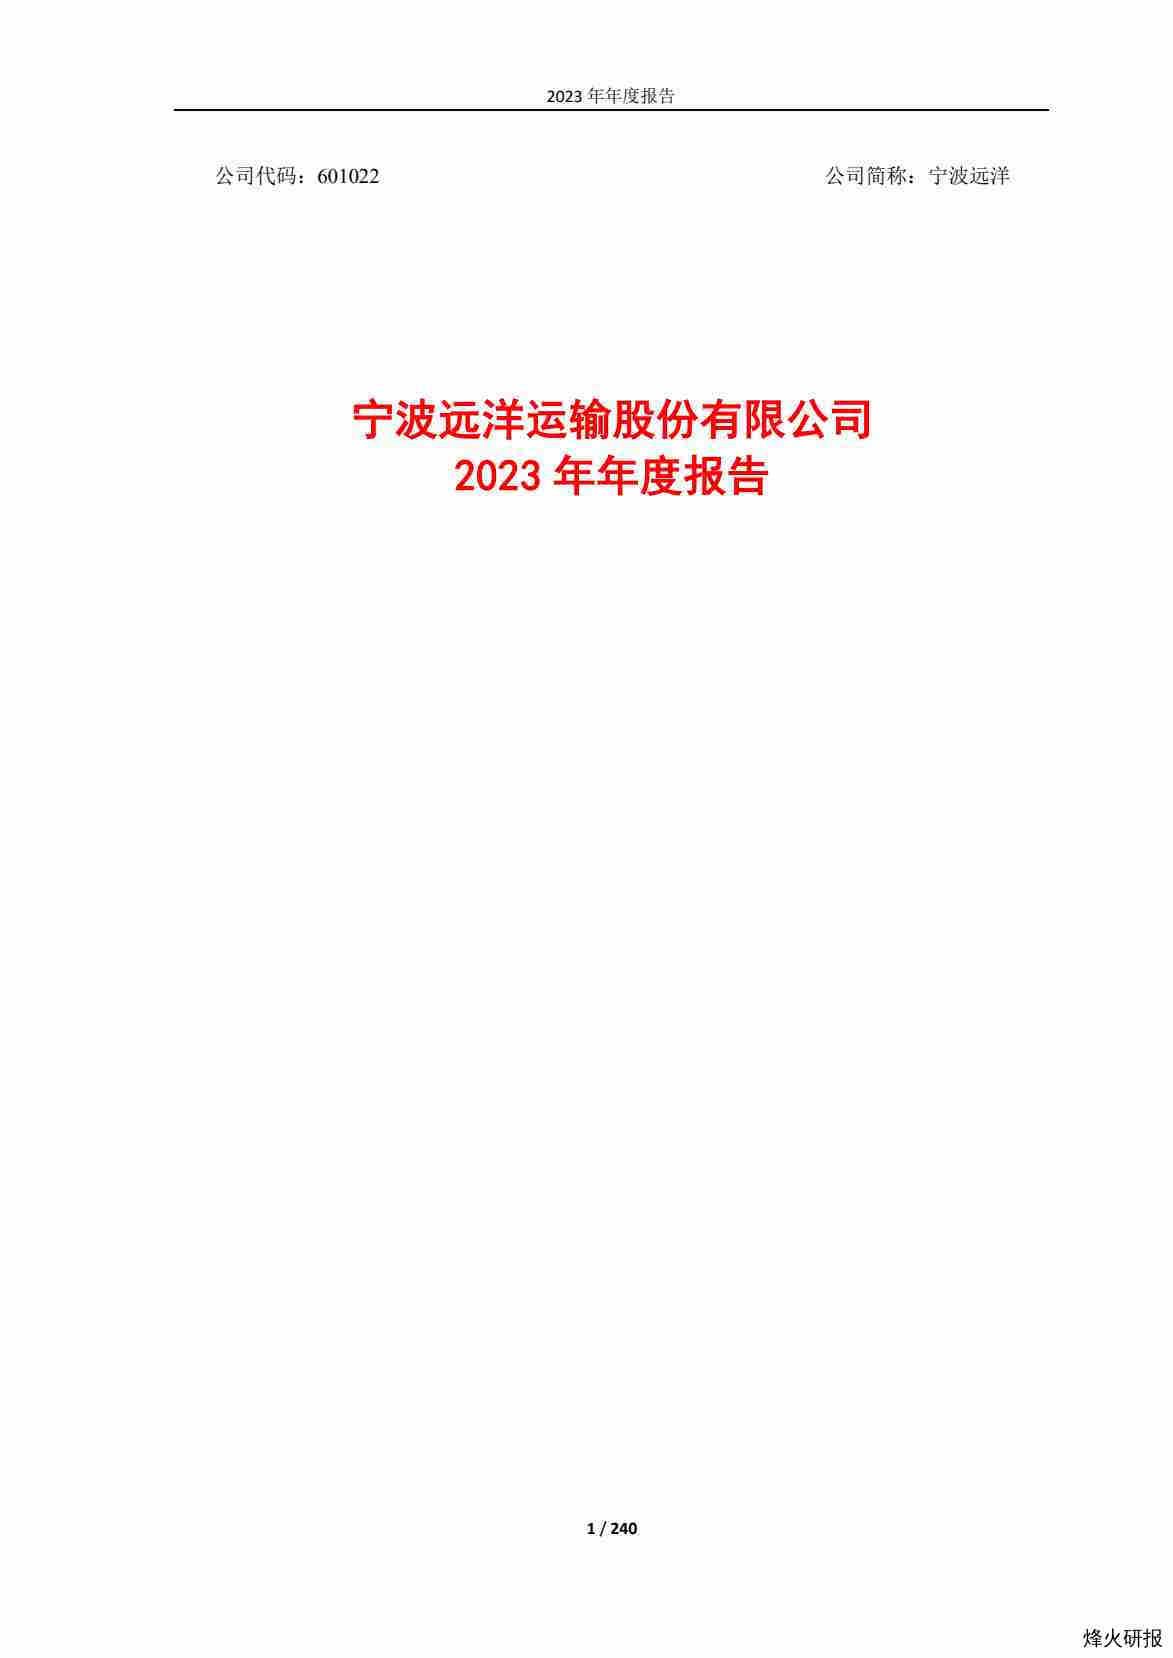 【财报】宁波远洋：宁波远洋运输股份有限公司2023年年度报告.pdf-第一页